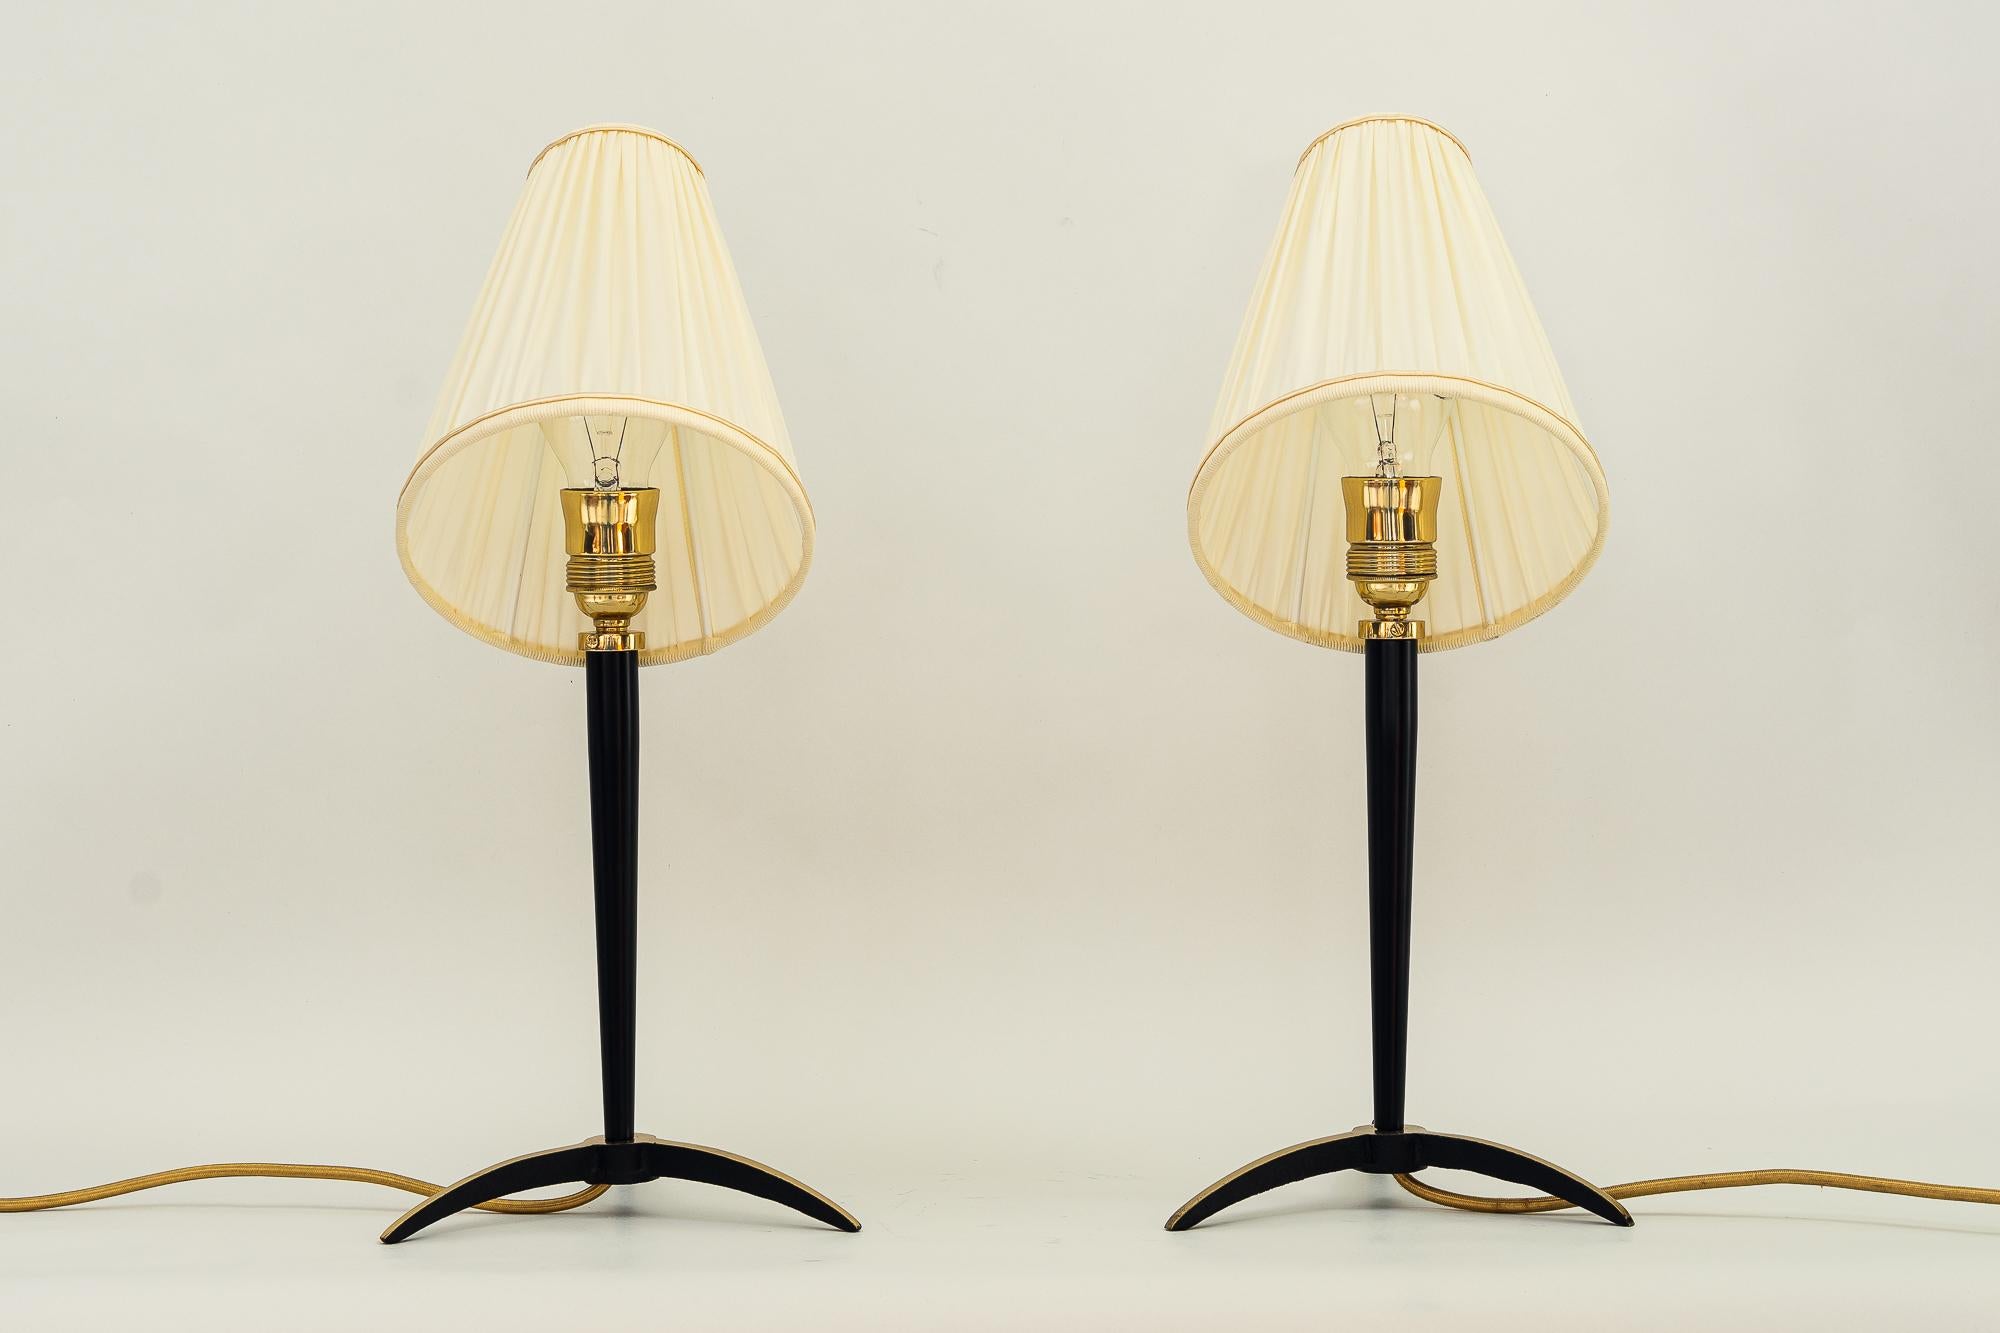 Extandable J.T.Kalmar-Tischlampen mit Stoffschirmen aus den 1950er Jahren
Messing- und Eisenlack lackiert
Die Lampenschirme sind ersetzt.